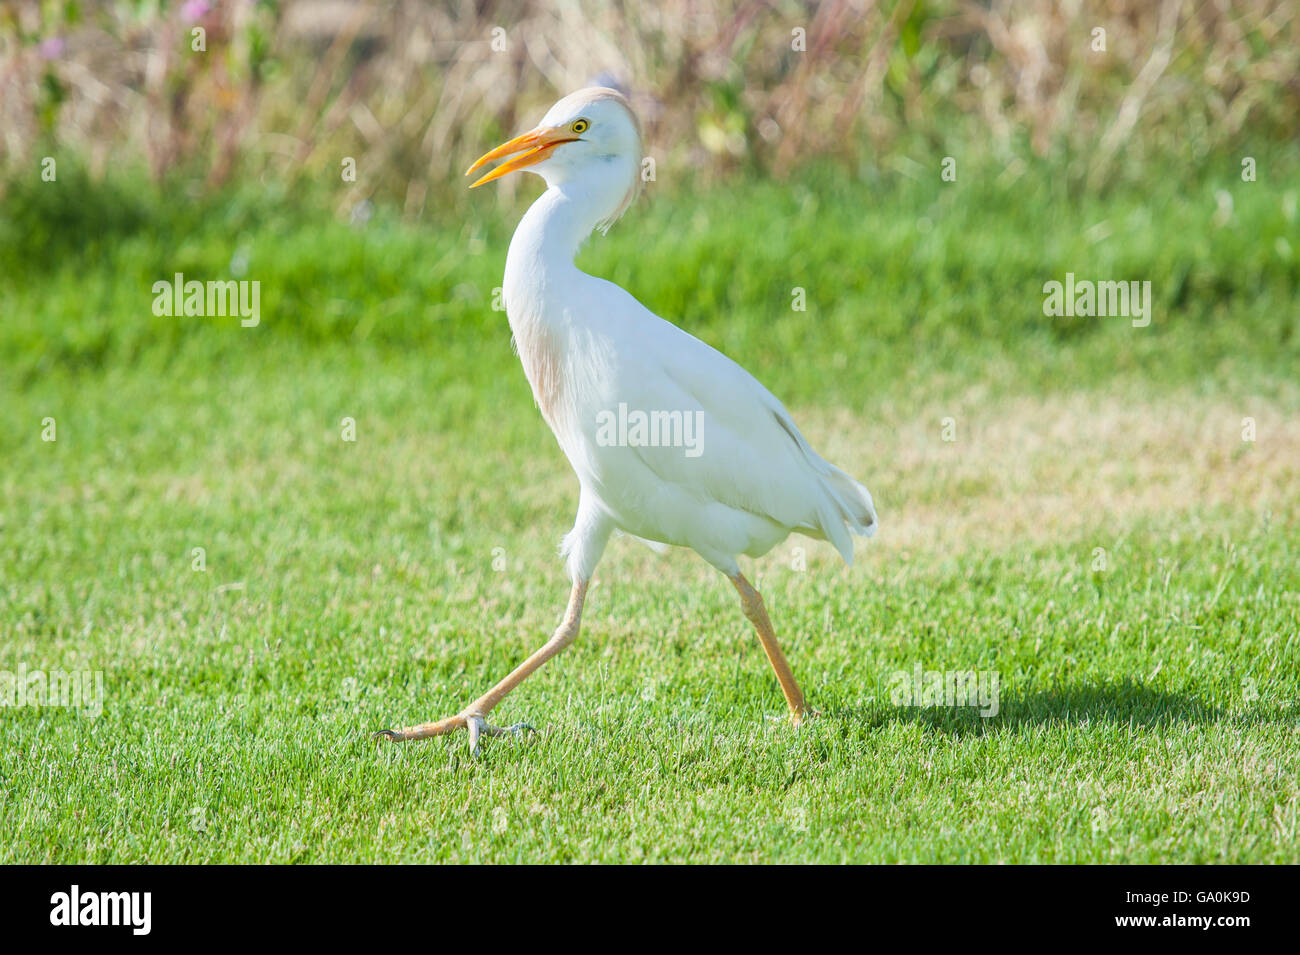 Cattle egret bubulcus ibis walking on grass in rural garden Stock Photo